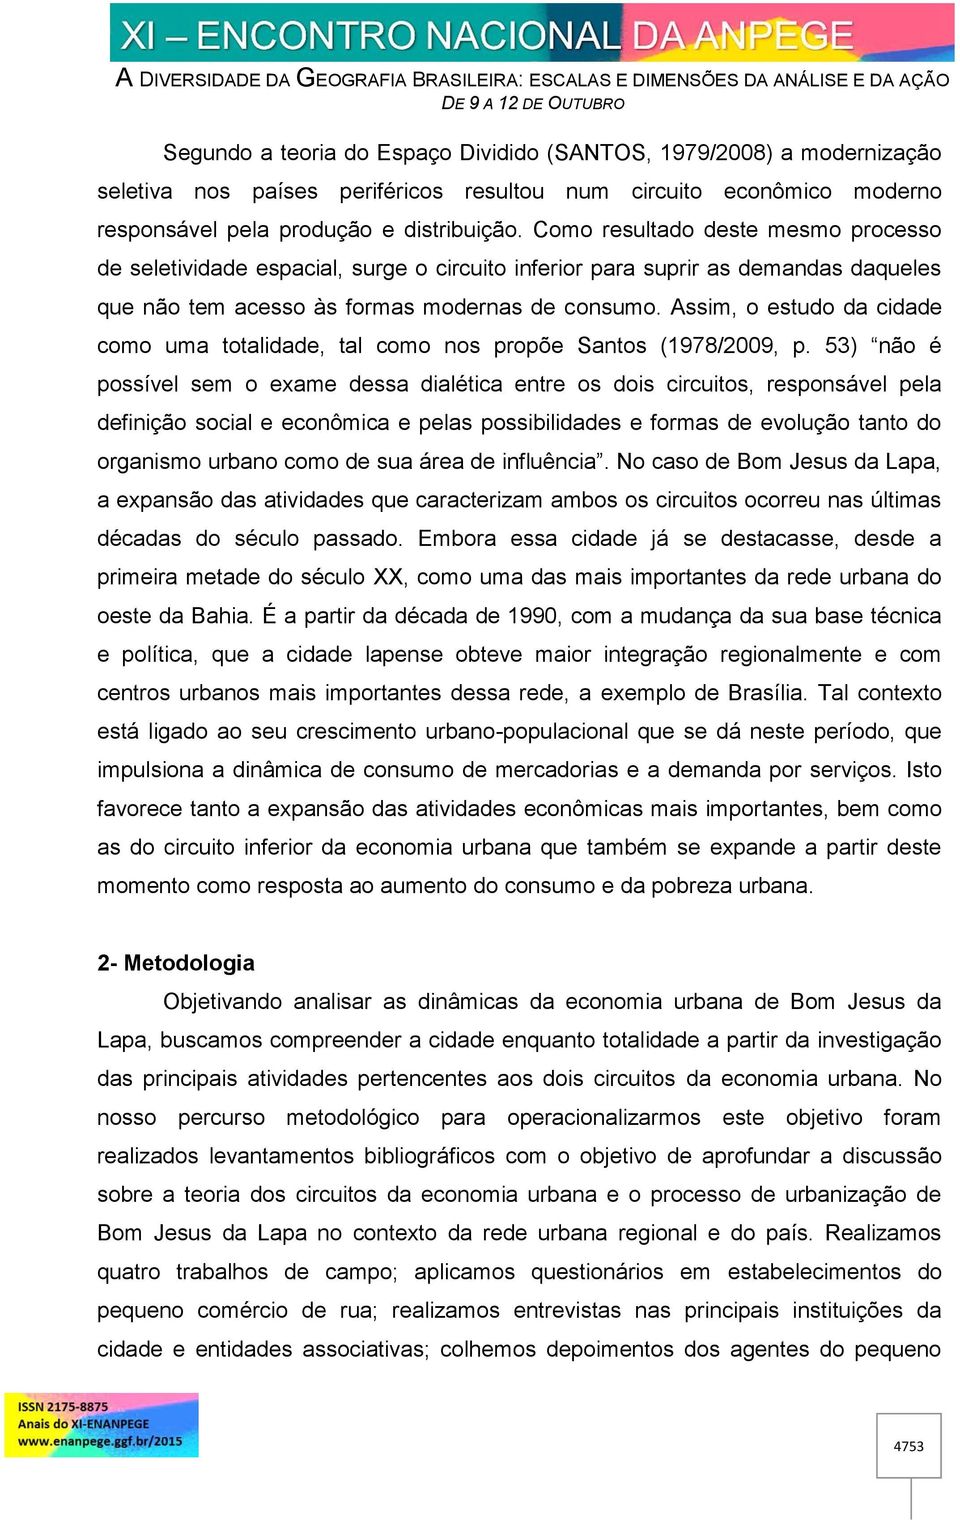 Assim, o estudo da cidade como uma totalidade, tal como nos propõe Santos (1978/2009, p.